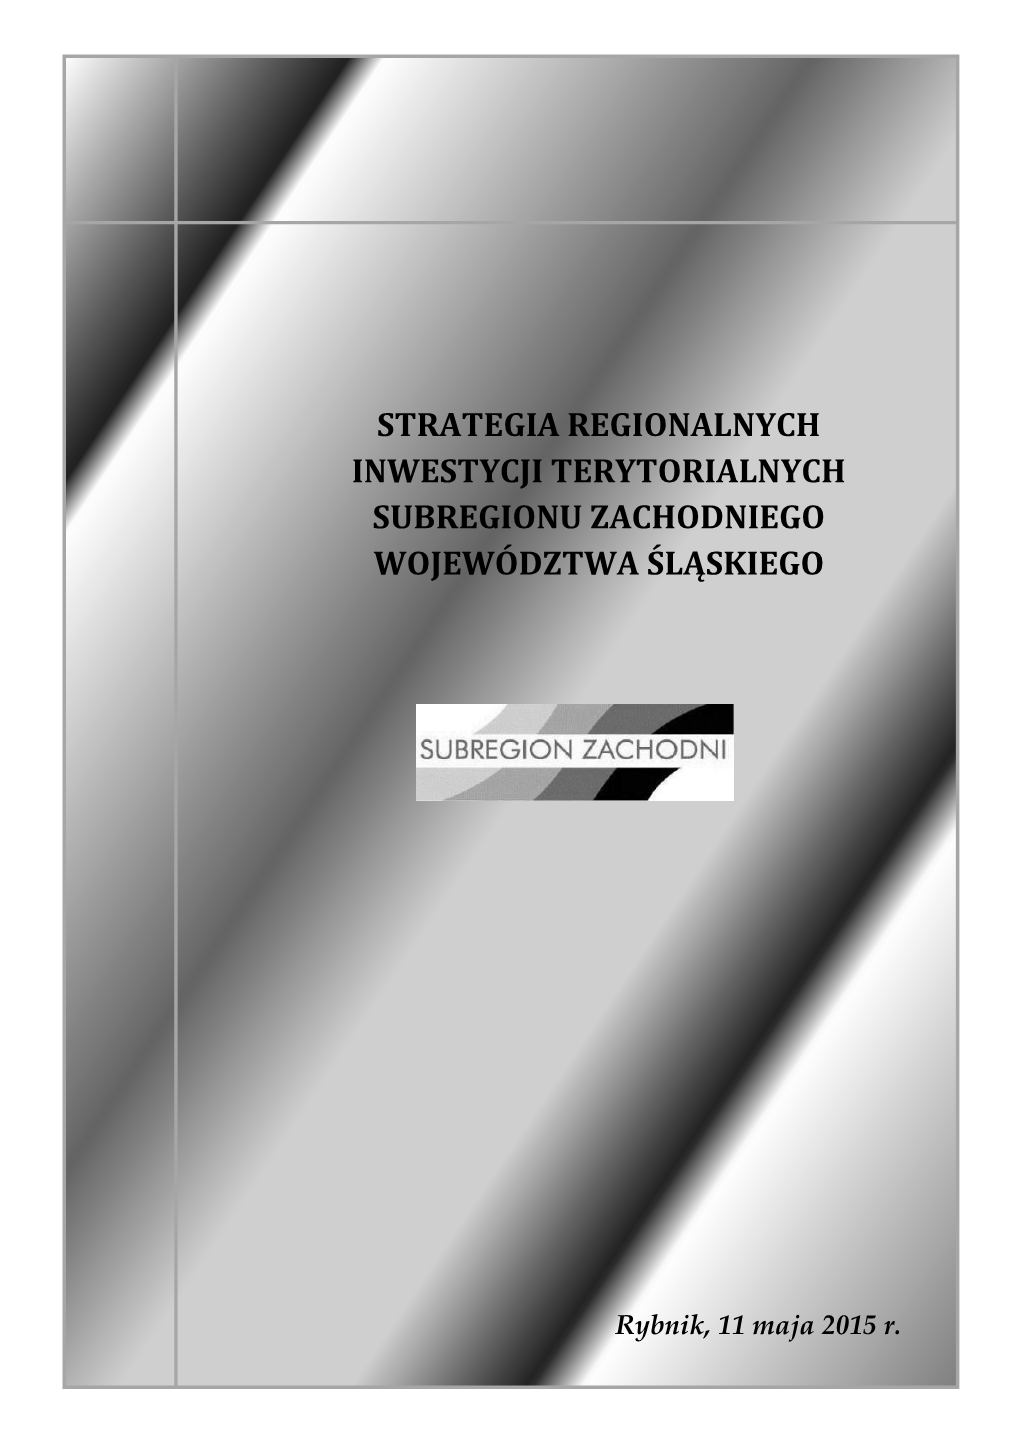 Strategia Regionalnych Inwestycji Terytorialnych Subregionu Zachodniego Województwa Śląskiego